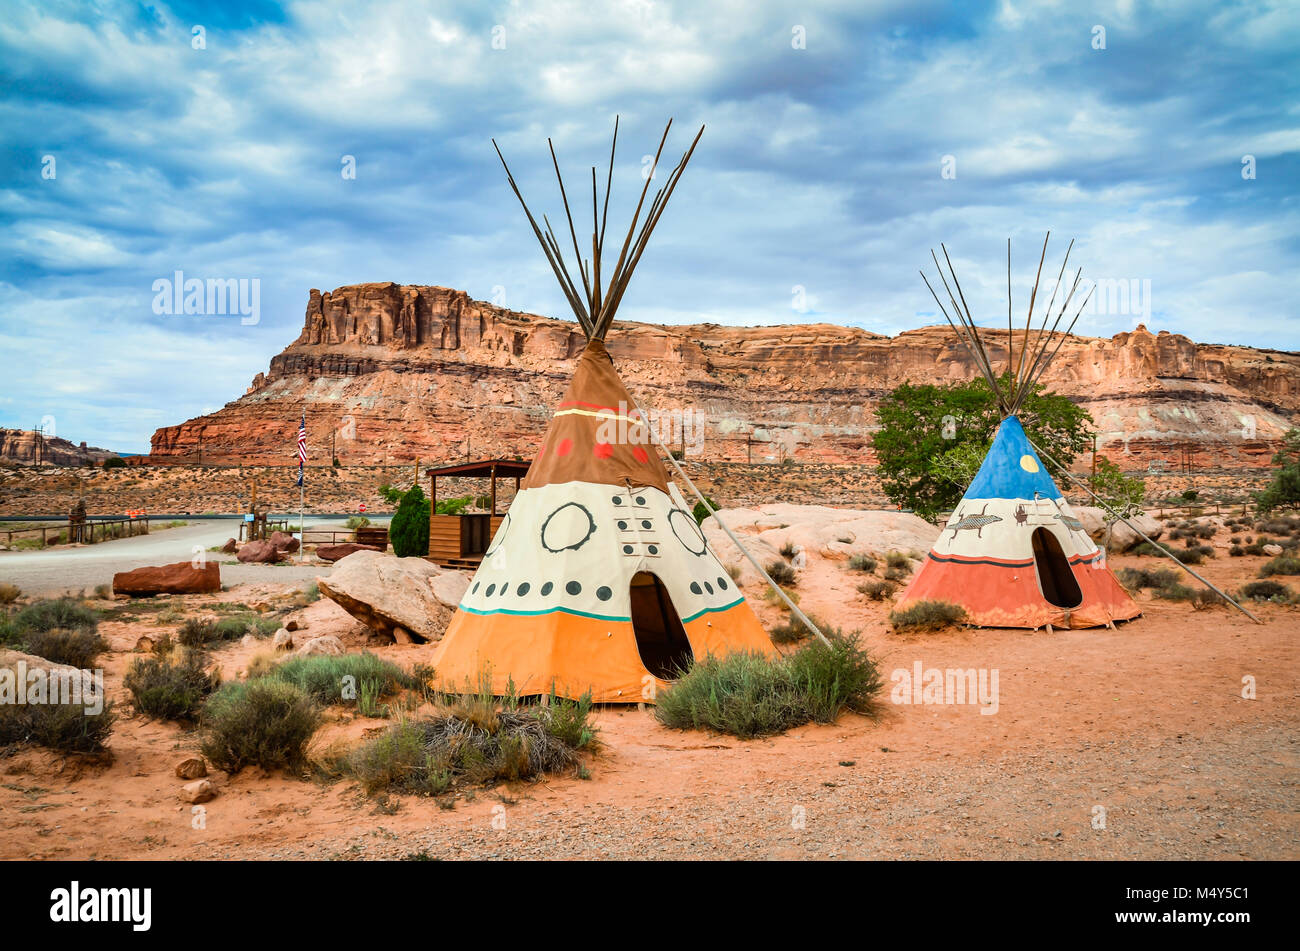 Zwei bunte Handbemalte teepees am Eingang des Arches National Park in Maob, Utah erinnern Besucher der gebürtigen amerikanischen Erbe der Region. Stockfoto